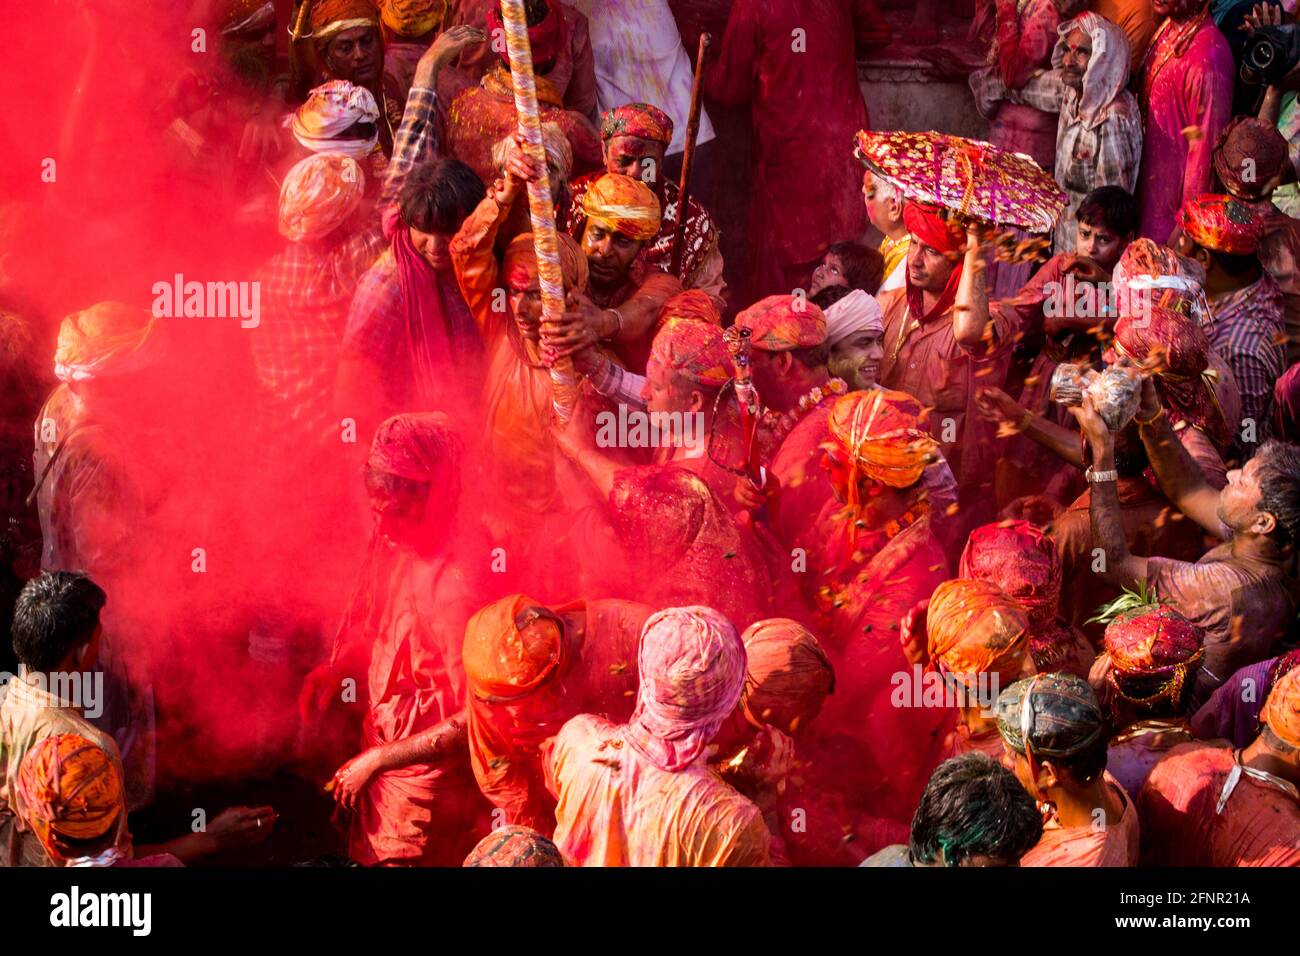 Lathmar Holi Barsana Nandgaon Vrindavan Festivals de couleurs à travers l'Inde Banque D'Images